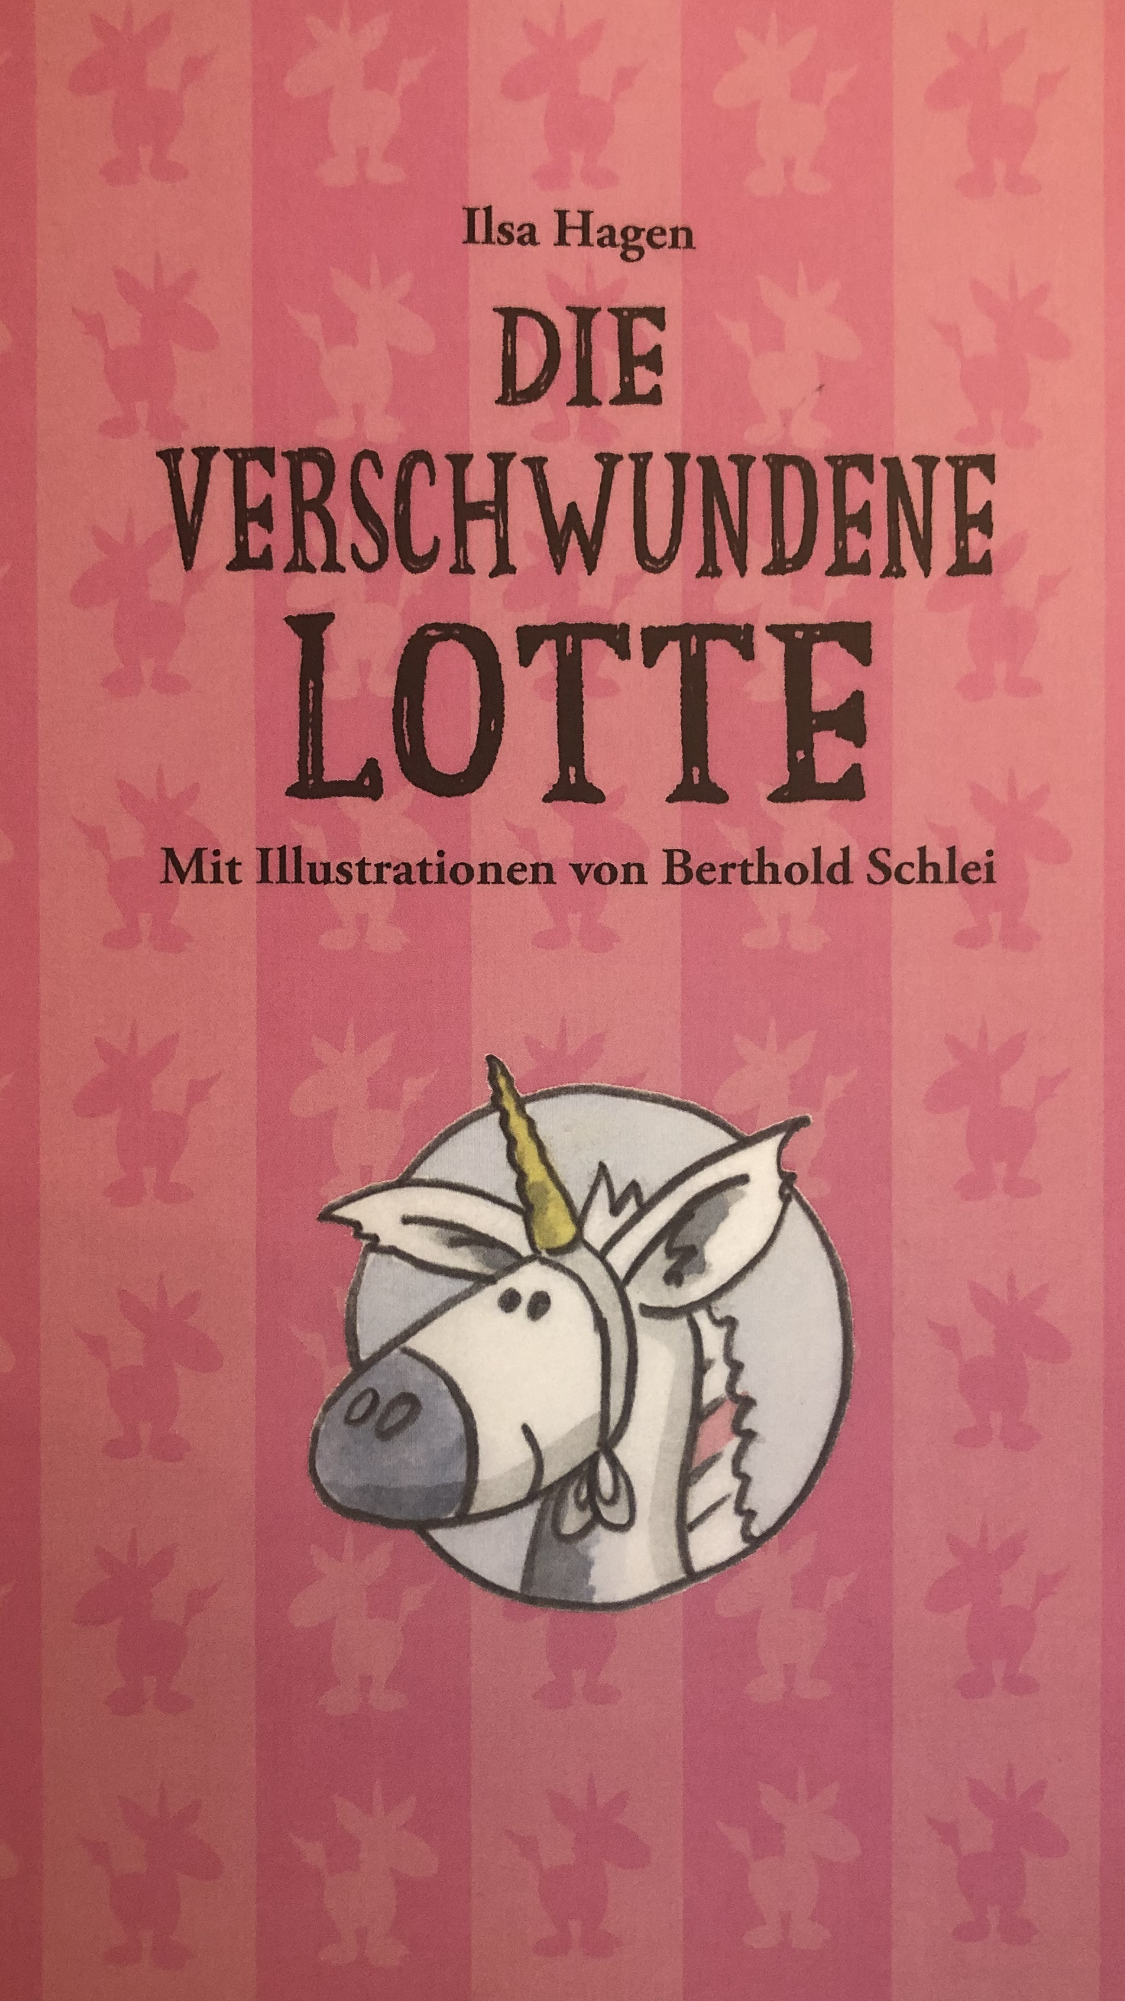 Prinzessin Rosalinde sucht im Märchenwald nach ihrem Esel Lotte.